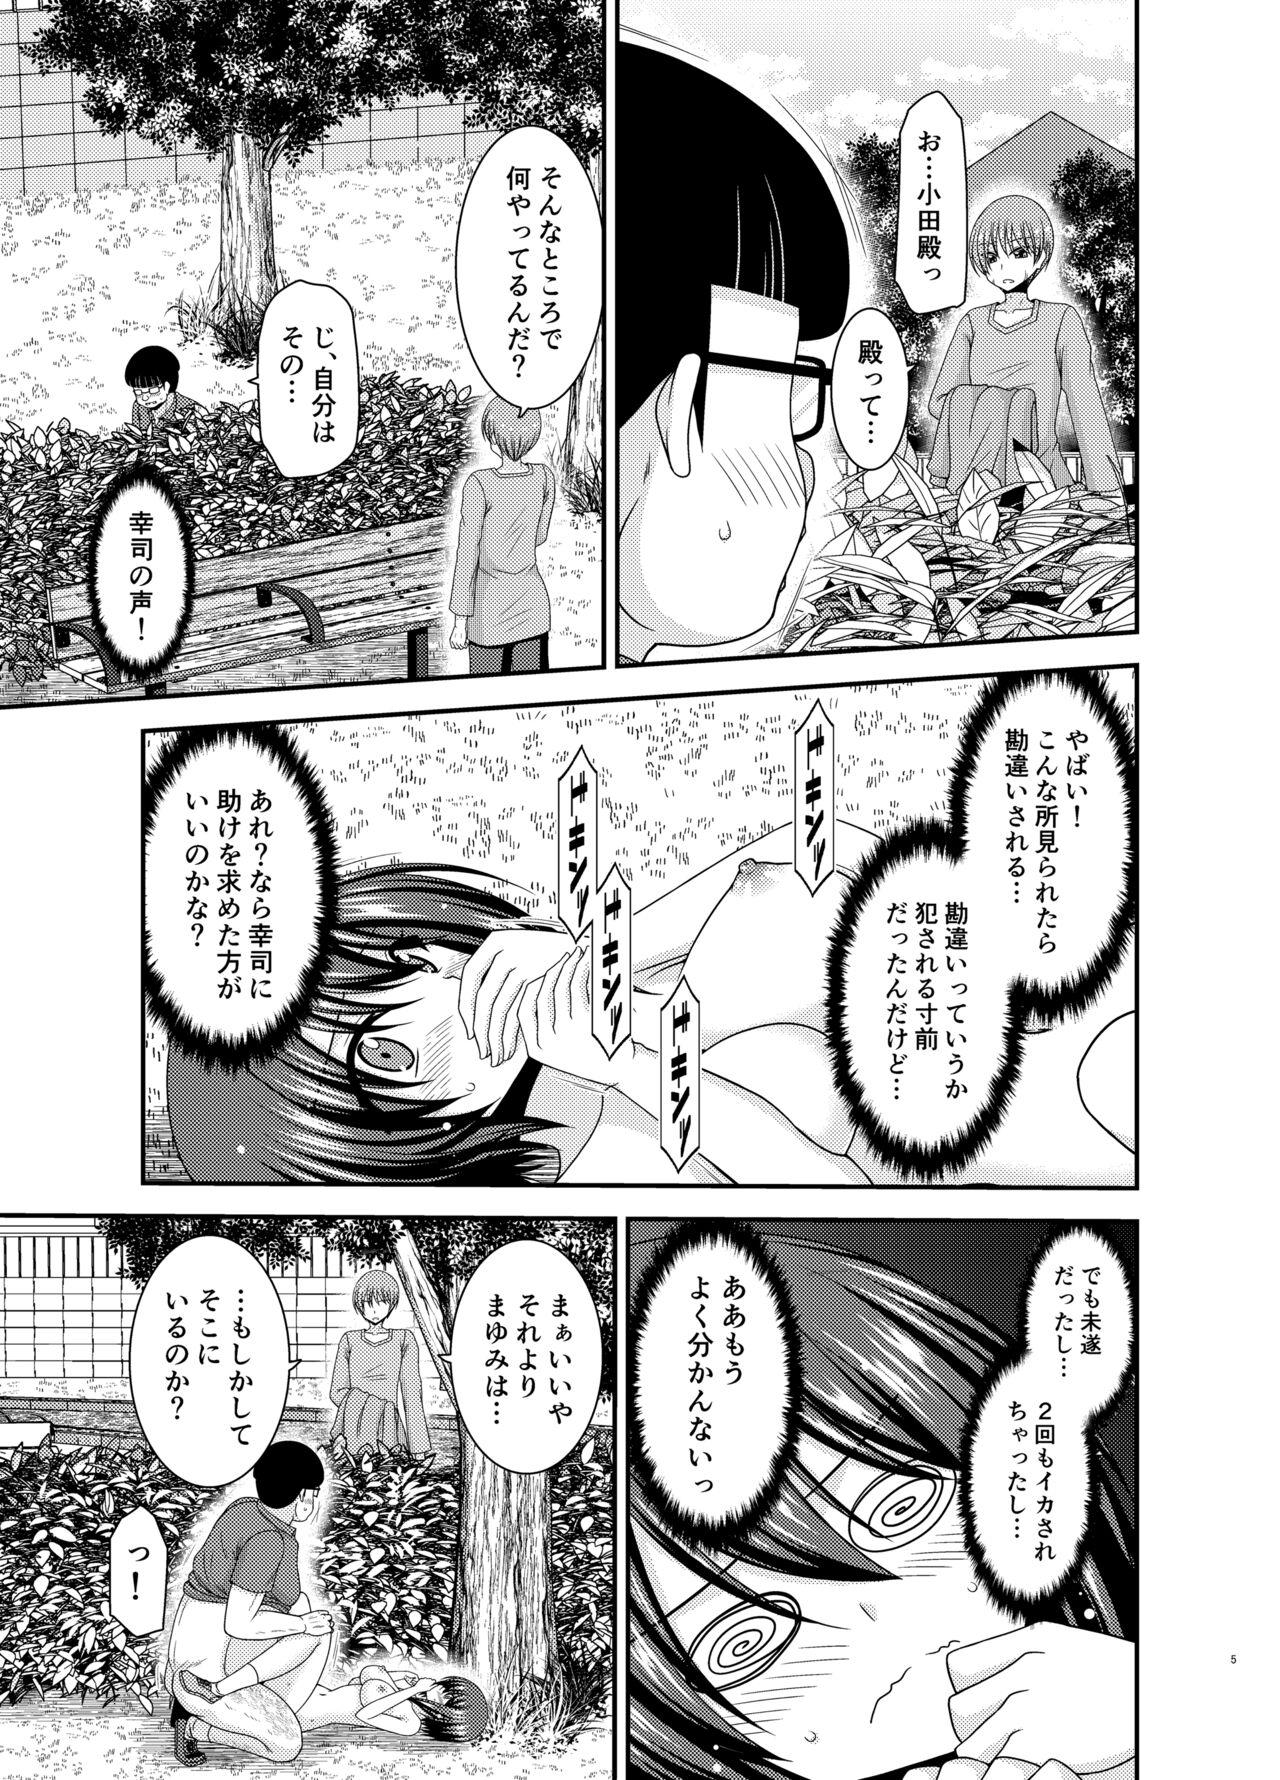 Bwc Netorare Roshutsu Shoujo 2 - Original 8teen - Page 4